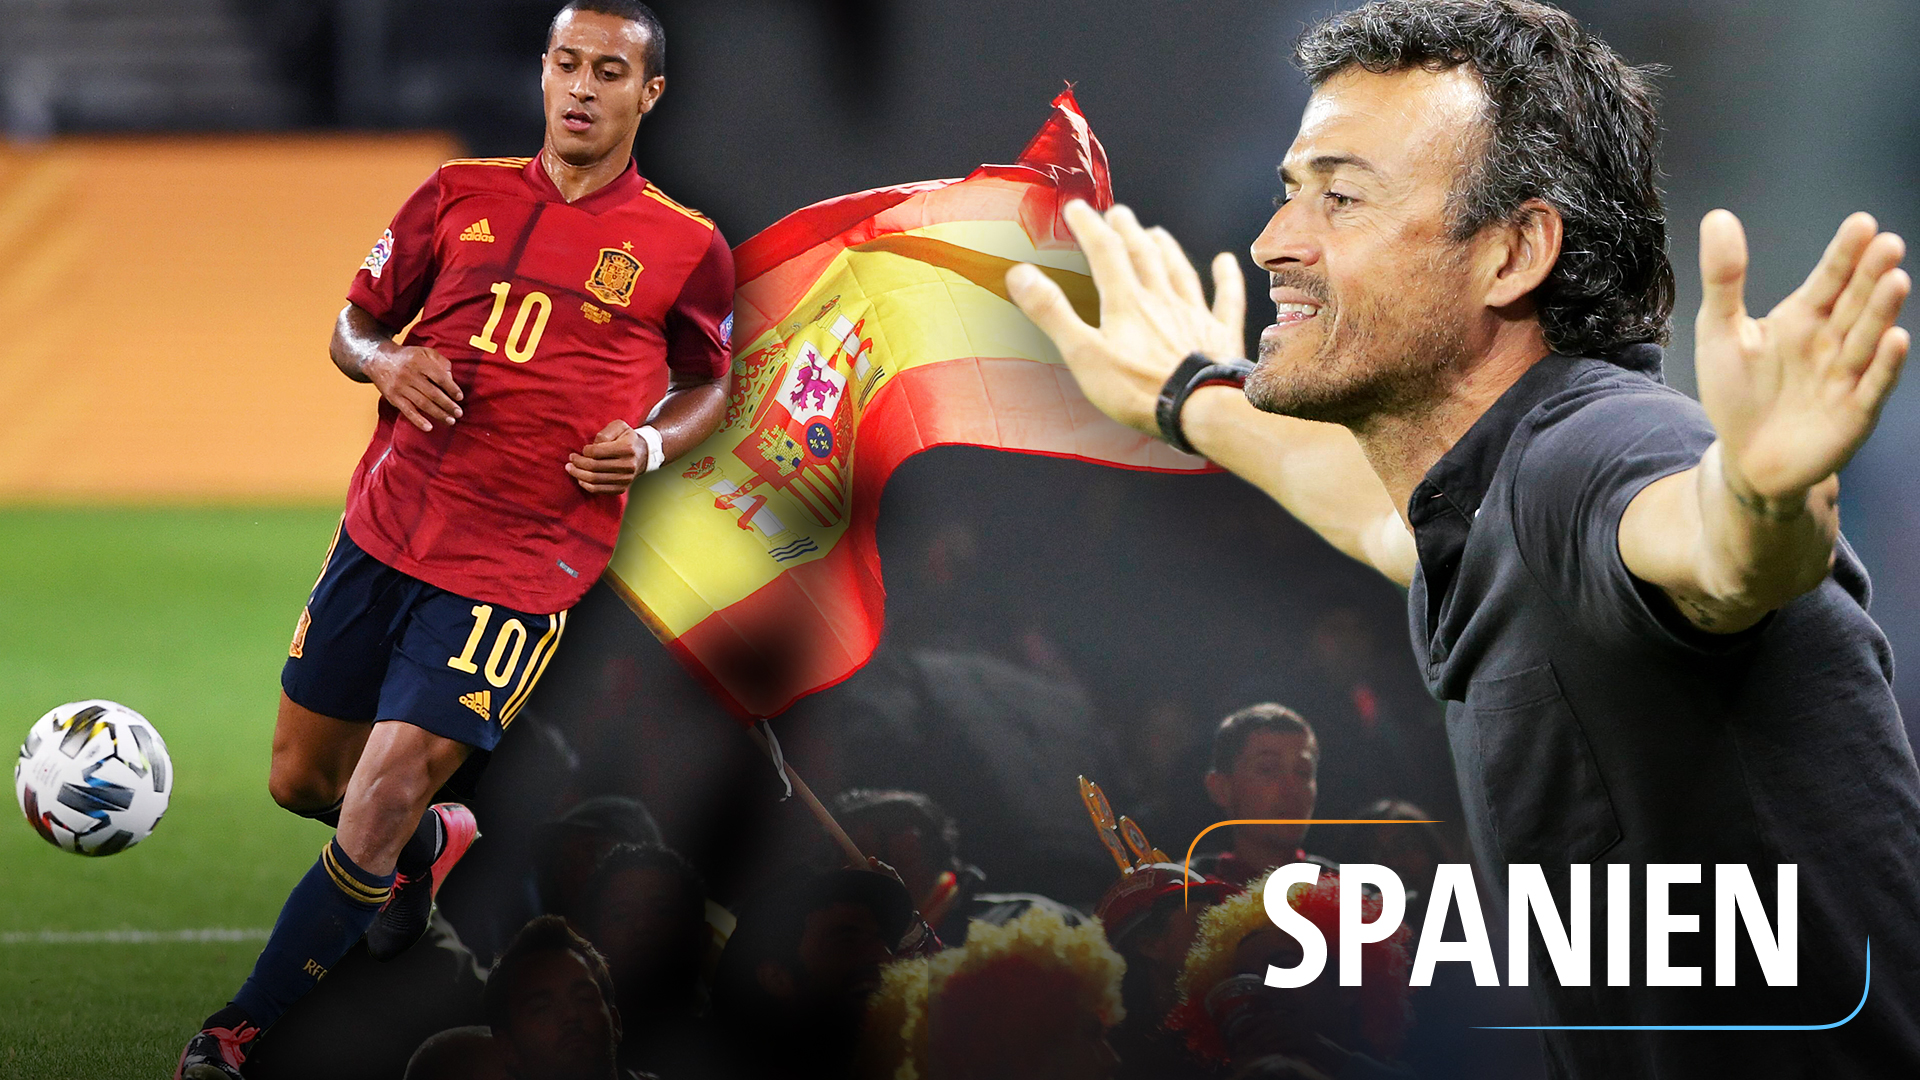 Teaserbild für die Nationalmannschaft: Spanien